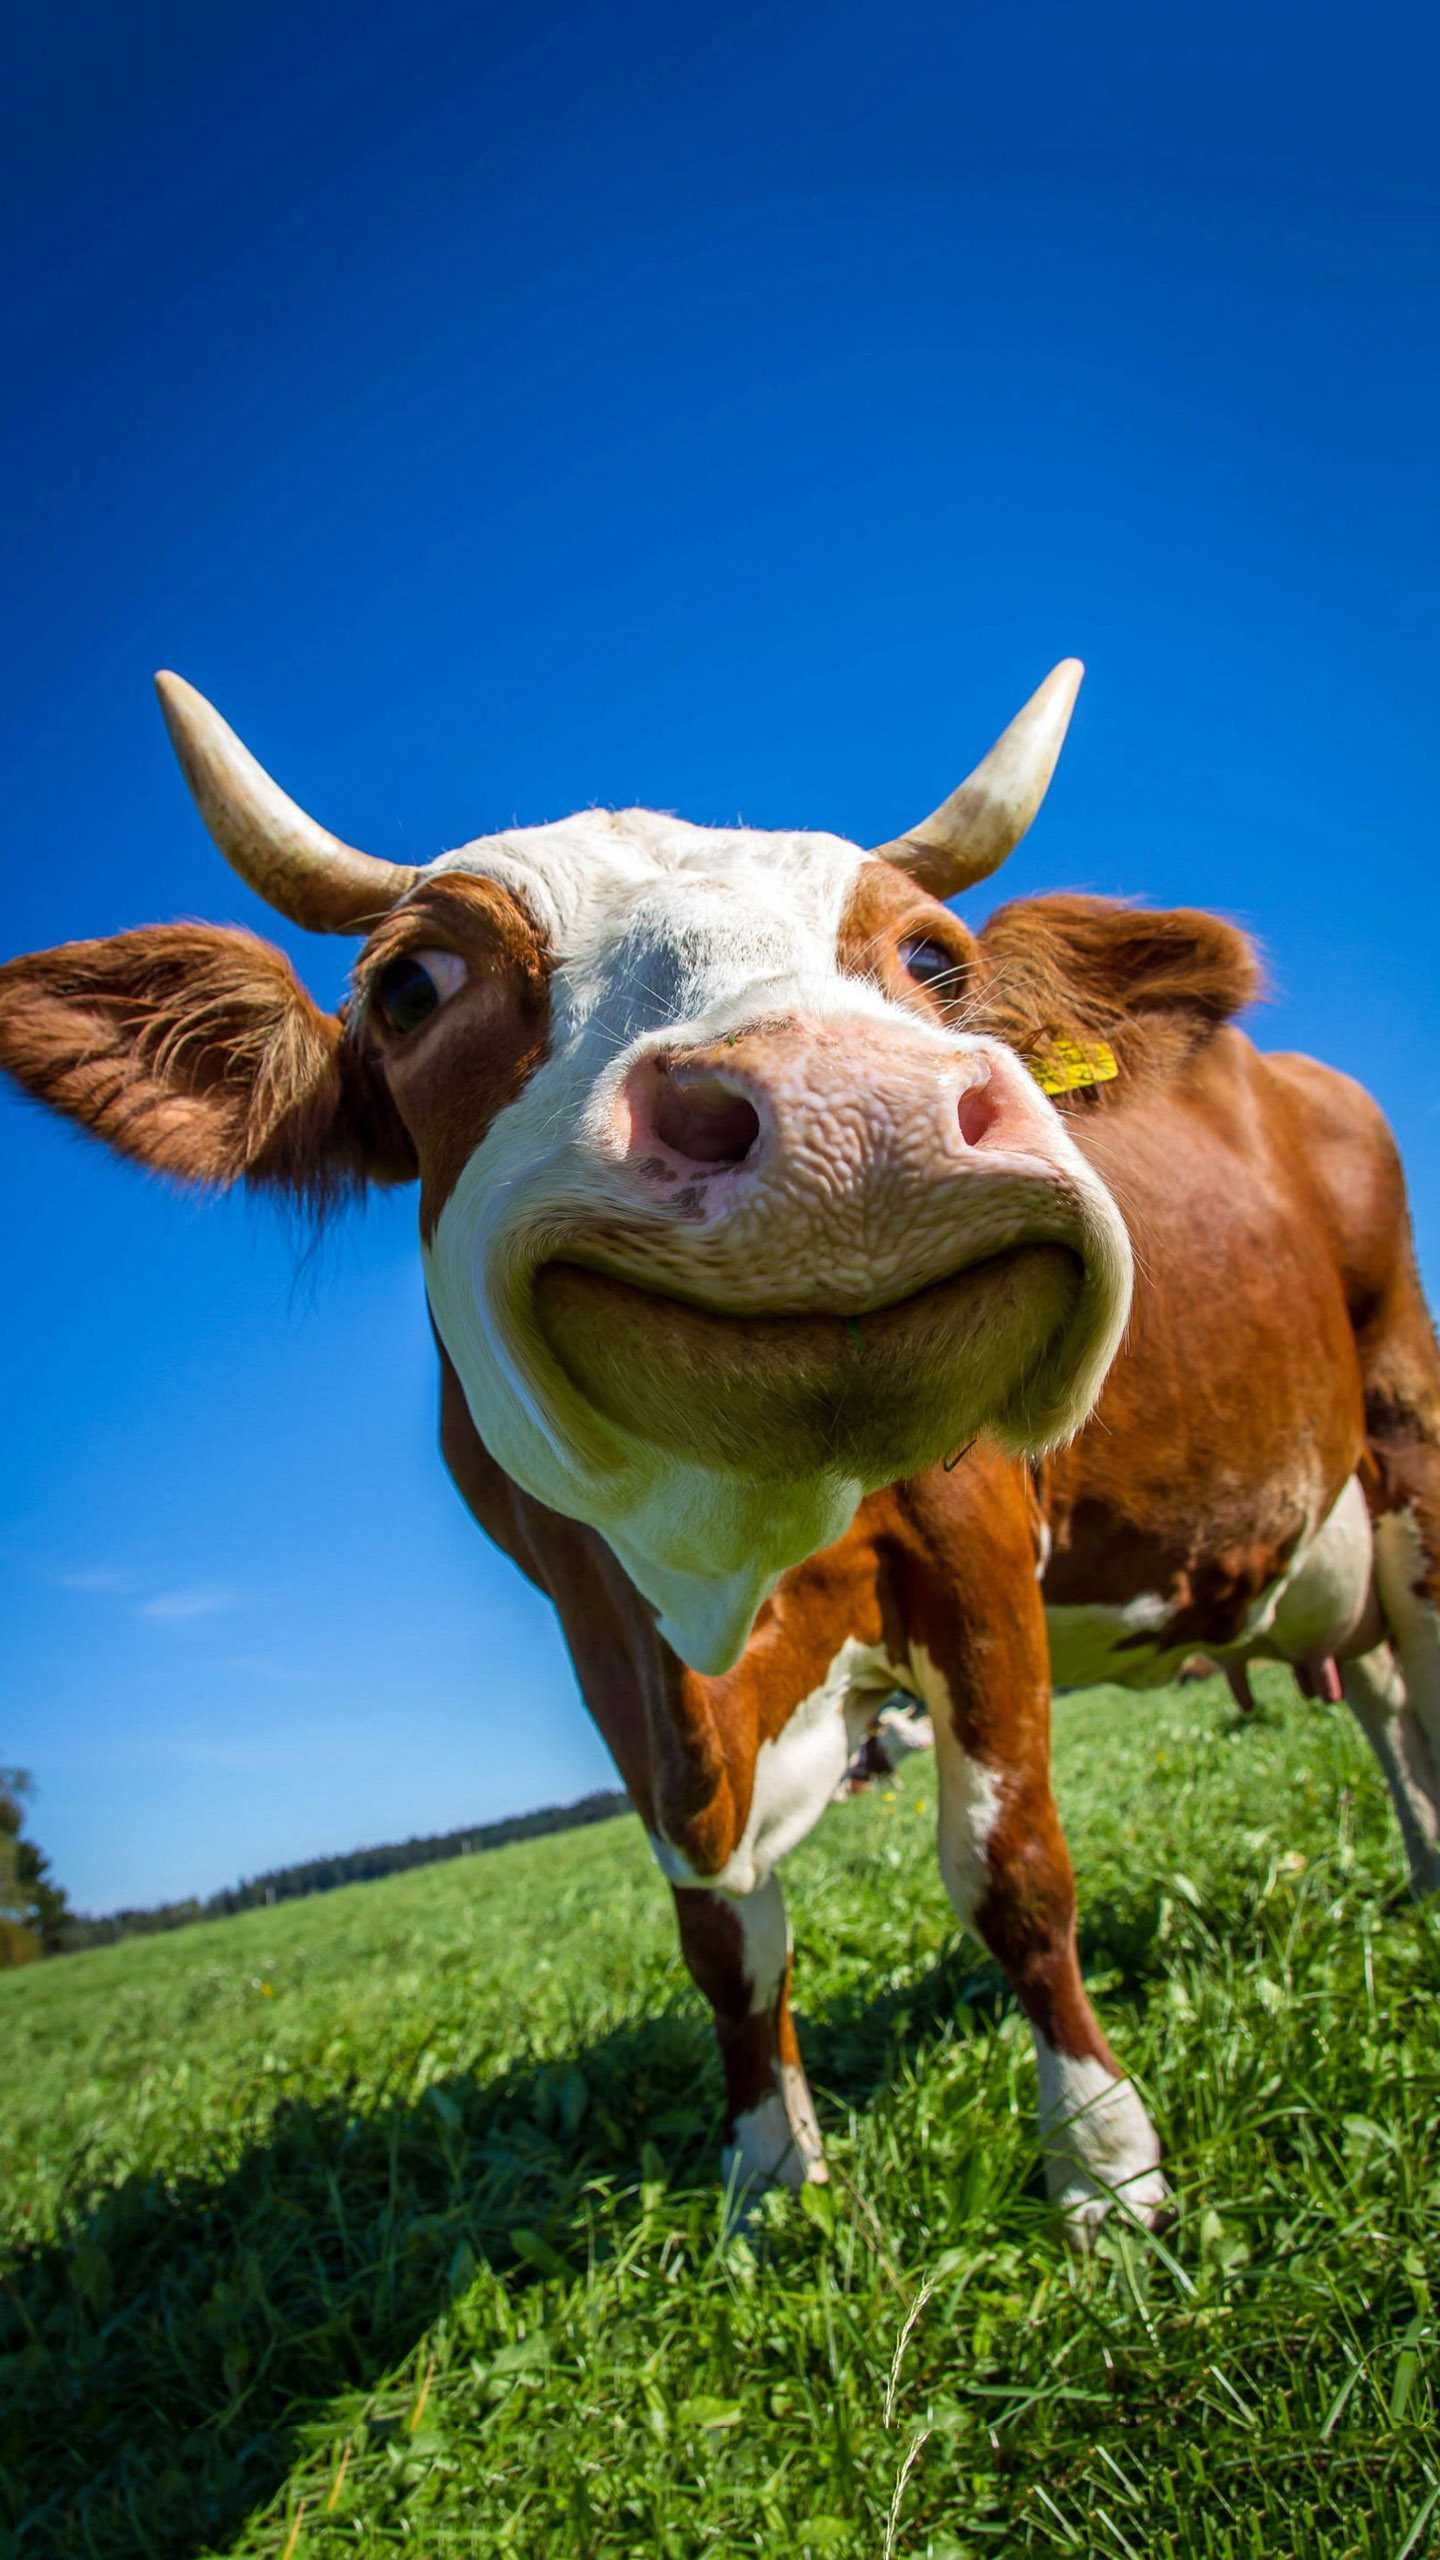 Hình ảnh chứng minh loài bò biết lướt ván | Cows funny, Funny cow pictures,  Cow pictures